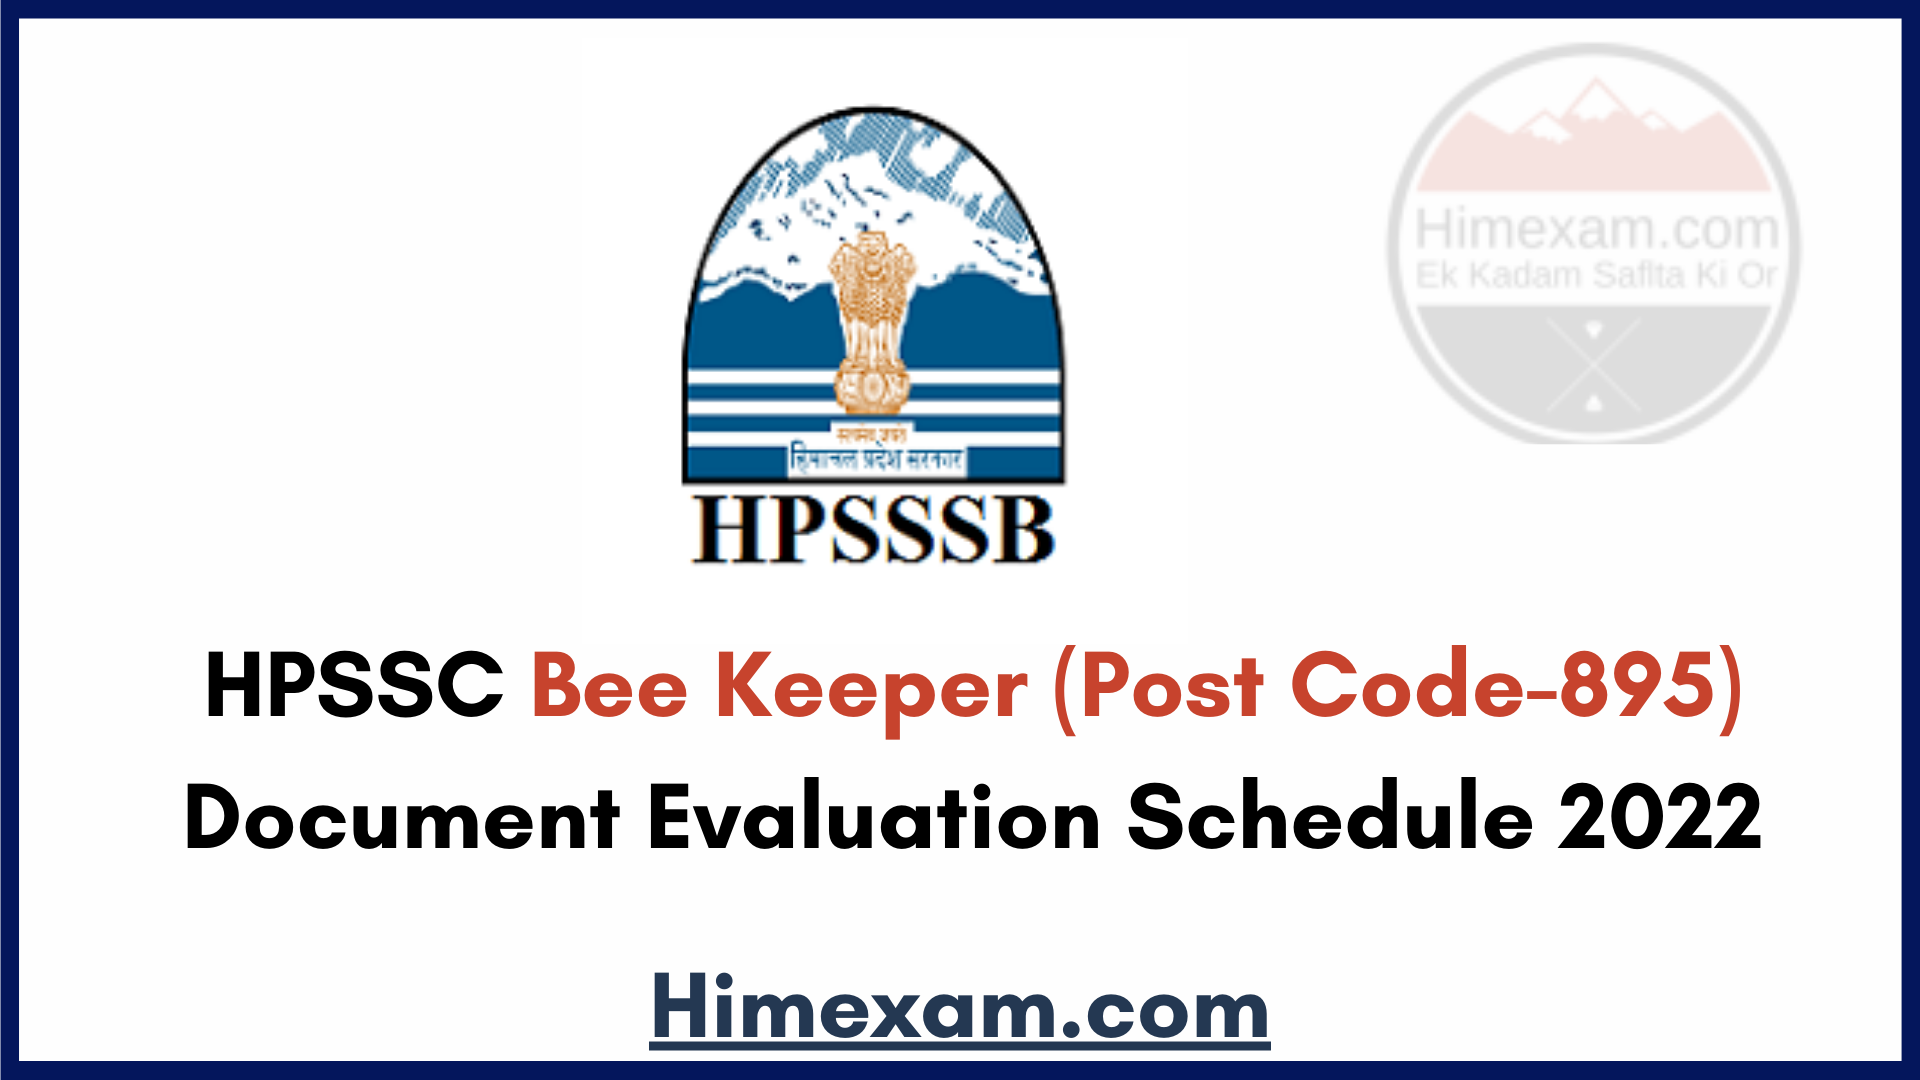 HPSSC Bee Keeper (Post Code-895) Document Evaluation Schedule 2022